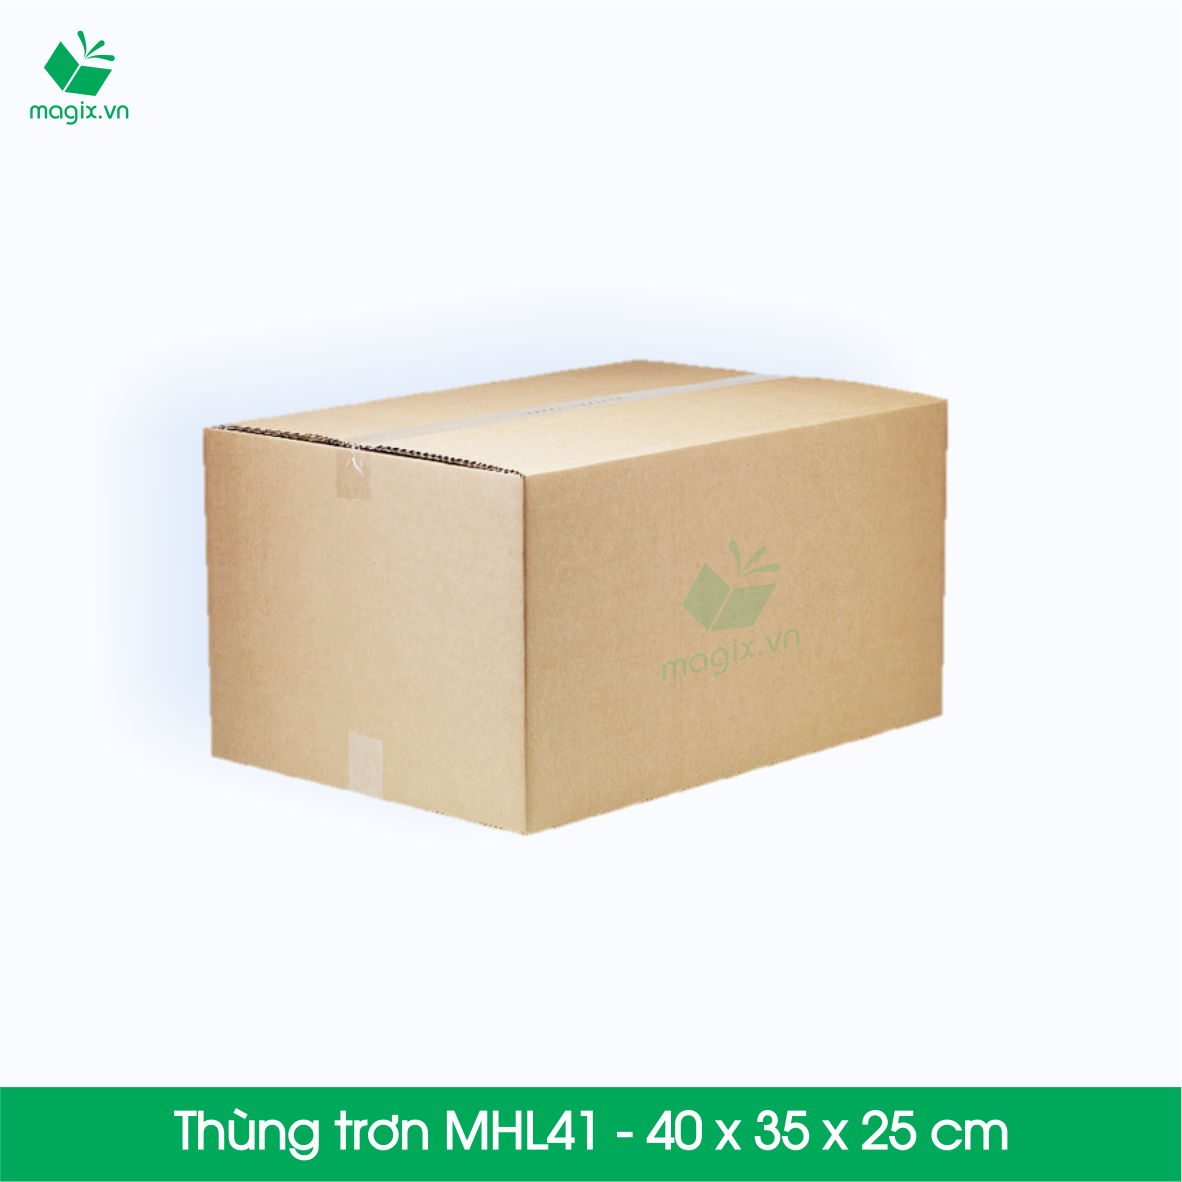 10 Thùng hộp carton - Mã MHL41 - Kích thước 40x35x25 (cm)